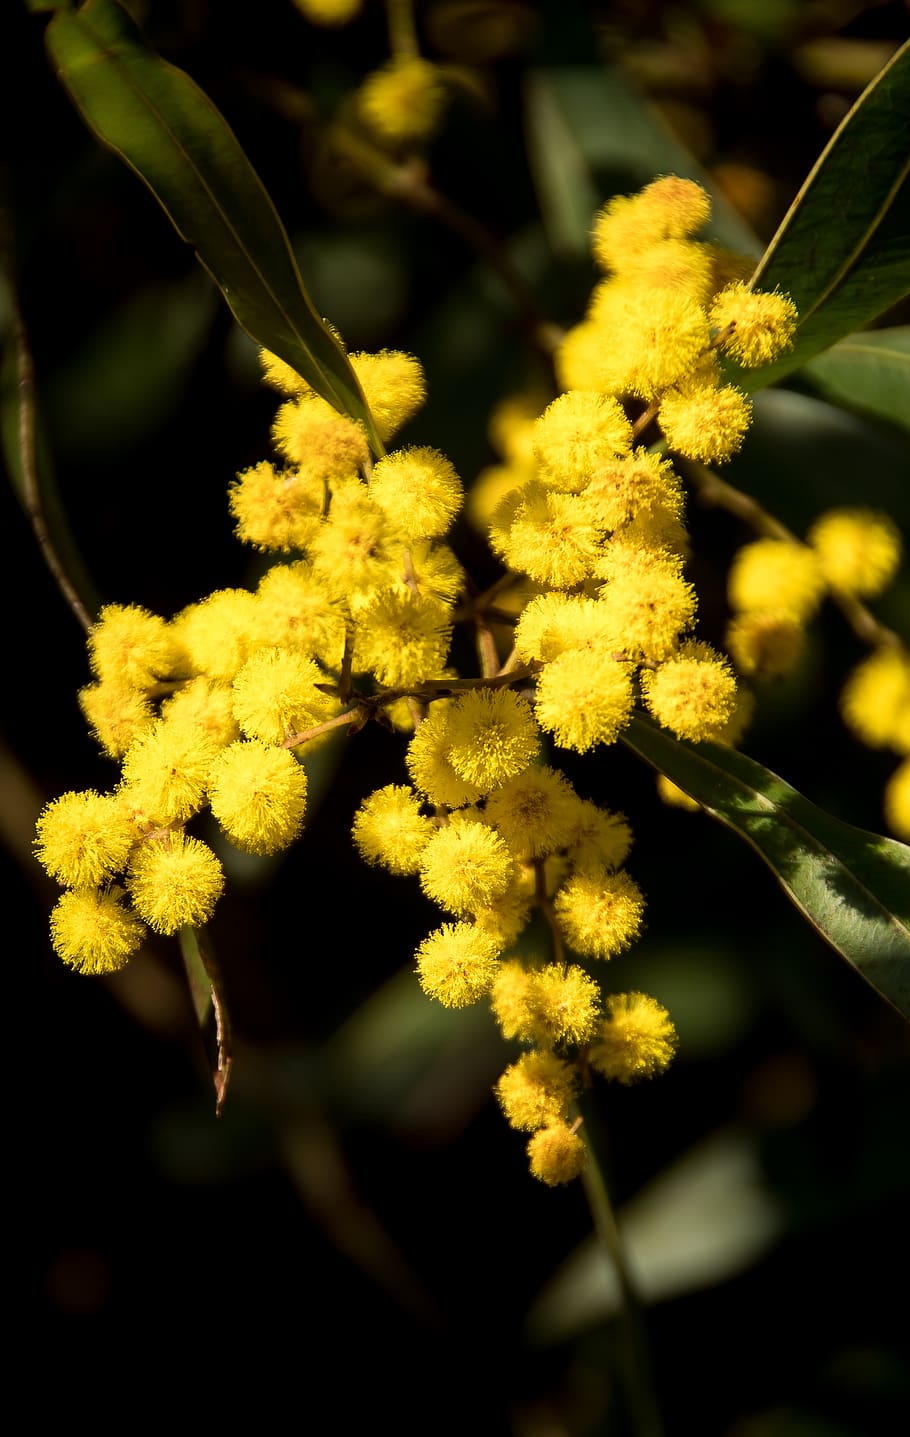 akasia, pial, bunga, kuning, halus, asli Australia, banyak, menanam, pertumbuhan, merapatkan